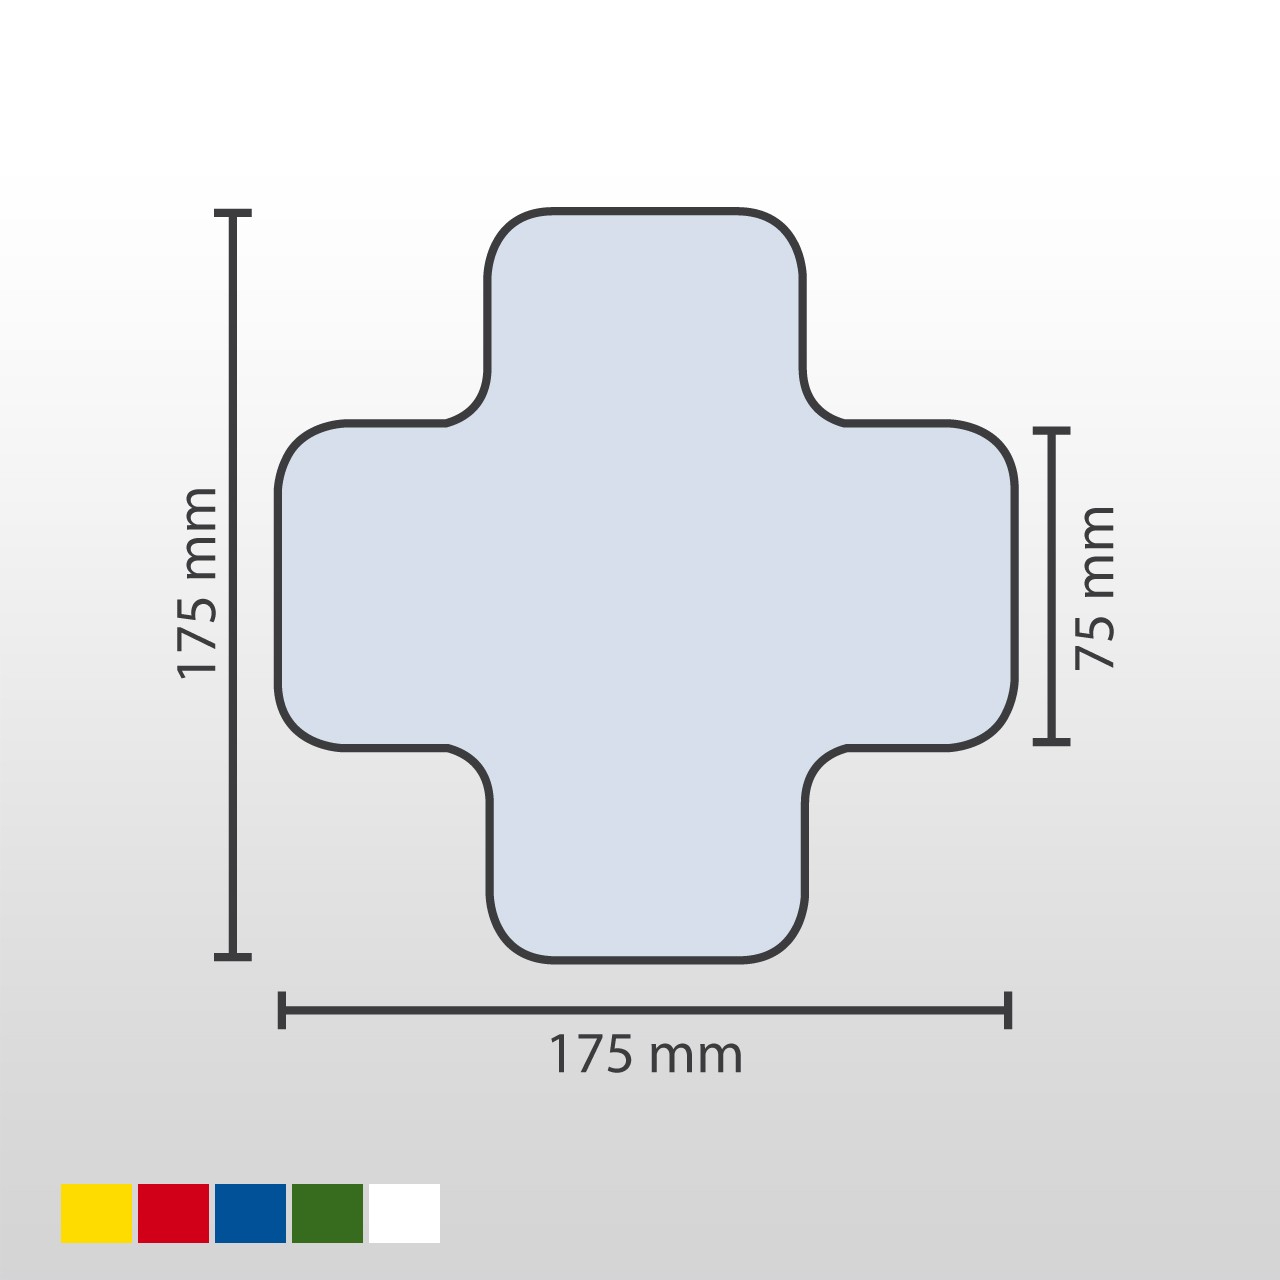 Stellplatzmarker | X-Stück | 25 Stück | Schenkelbreite 7,5cm | PVC 0,6mm | Für glatte & spaltfreie Böden | Gelb